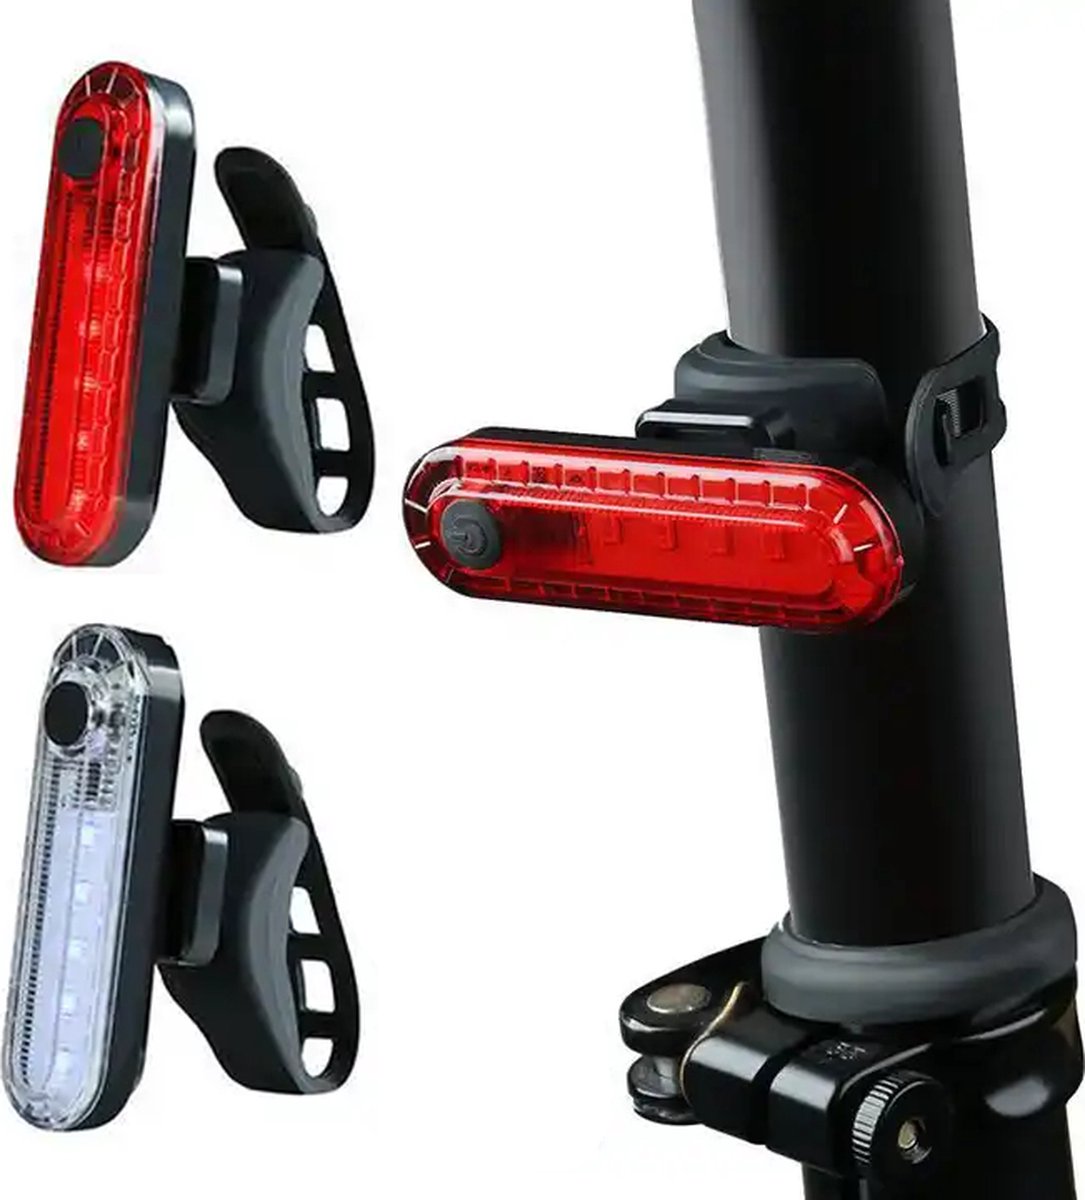 Pro Sport Lights Voorlicht + Achterlicht 50 Lumen Fietsverlichtingsset - Rood + Wit Fietslamp